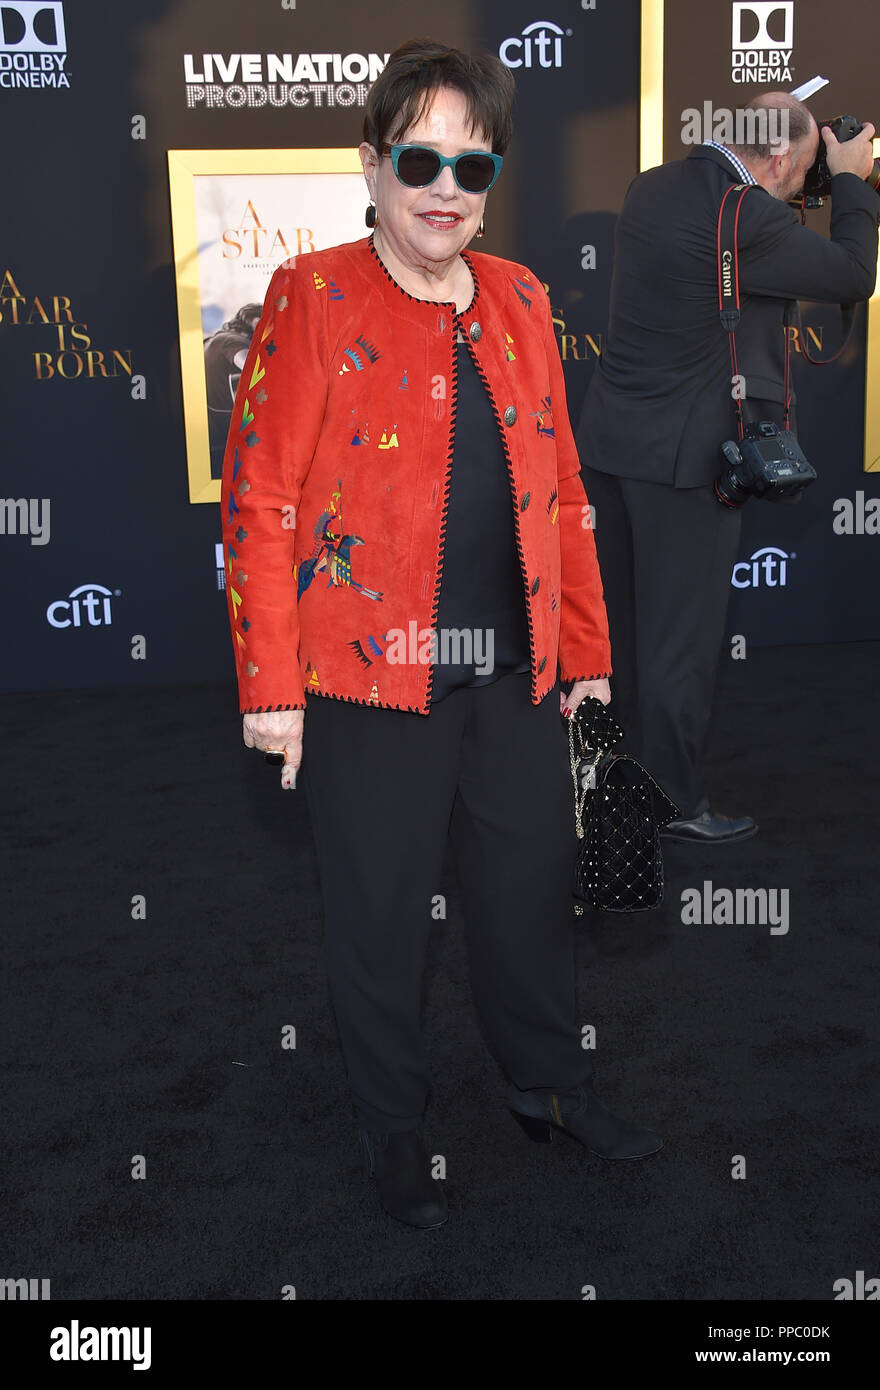 Los Angeles, California, USA. 24Sep, 2018. Kathy Bates arriva per la premiere del film "è nata una stella' presso lo Shrine Auditorium. Credito: Lisa O'Connor/ZUMA filo/Alamy Live News Foto Stock